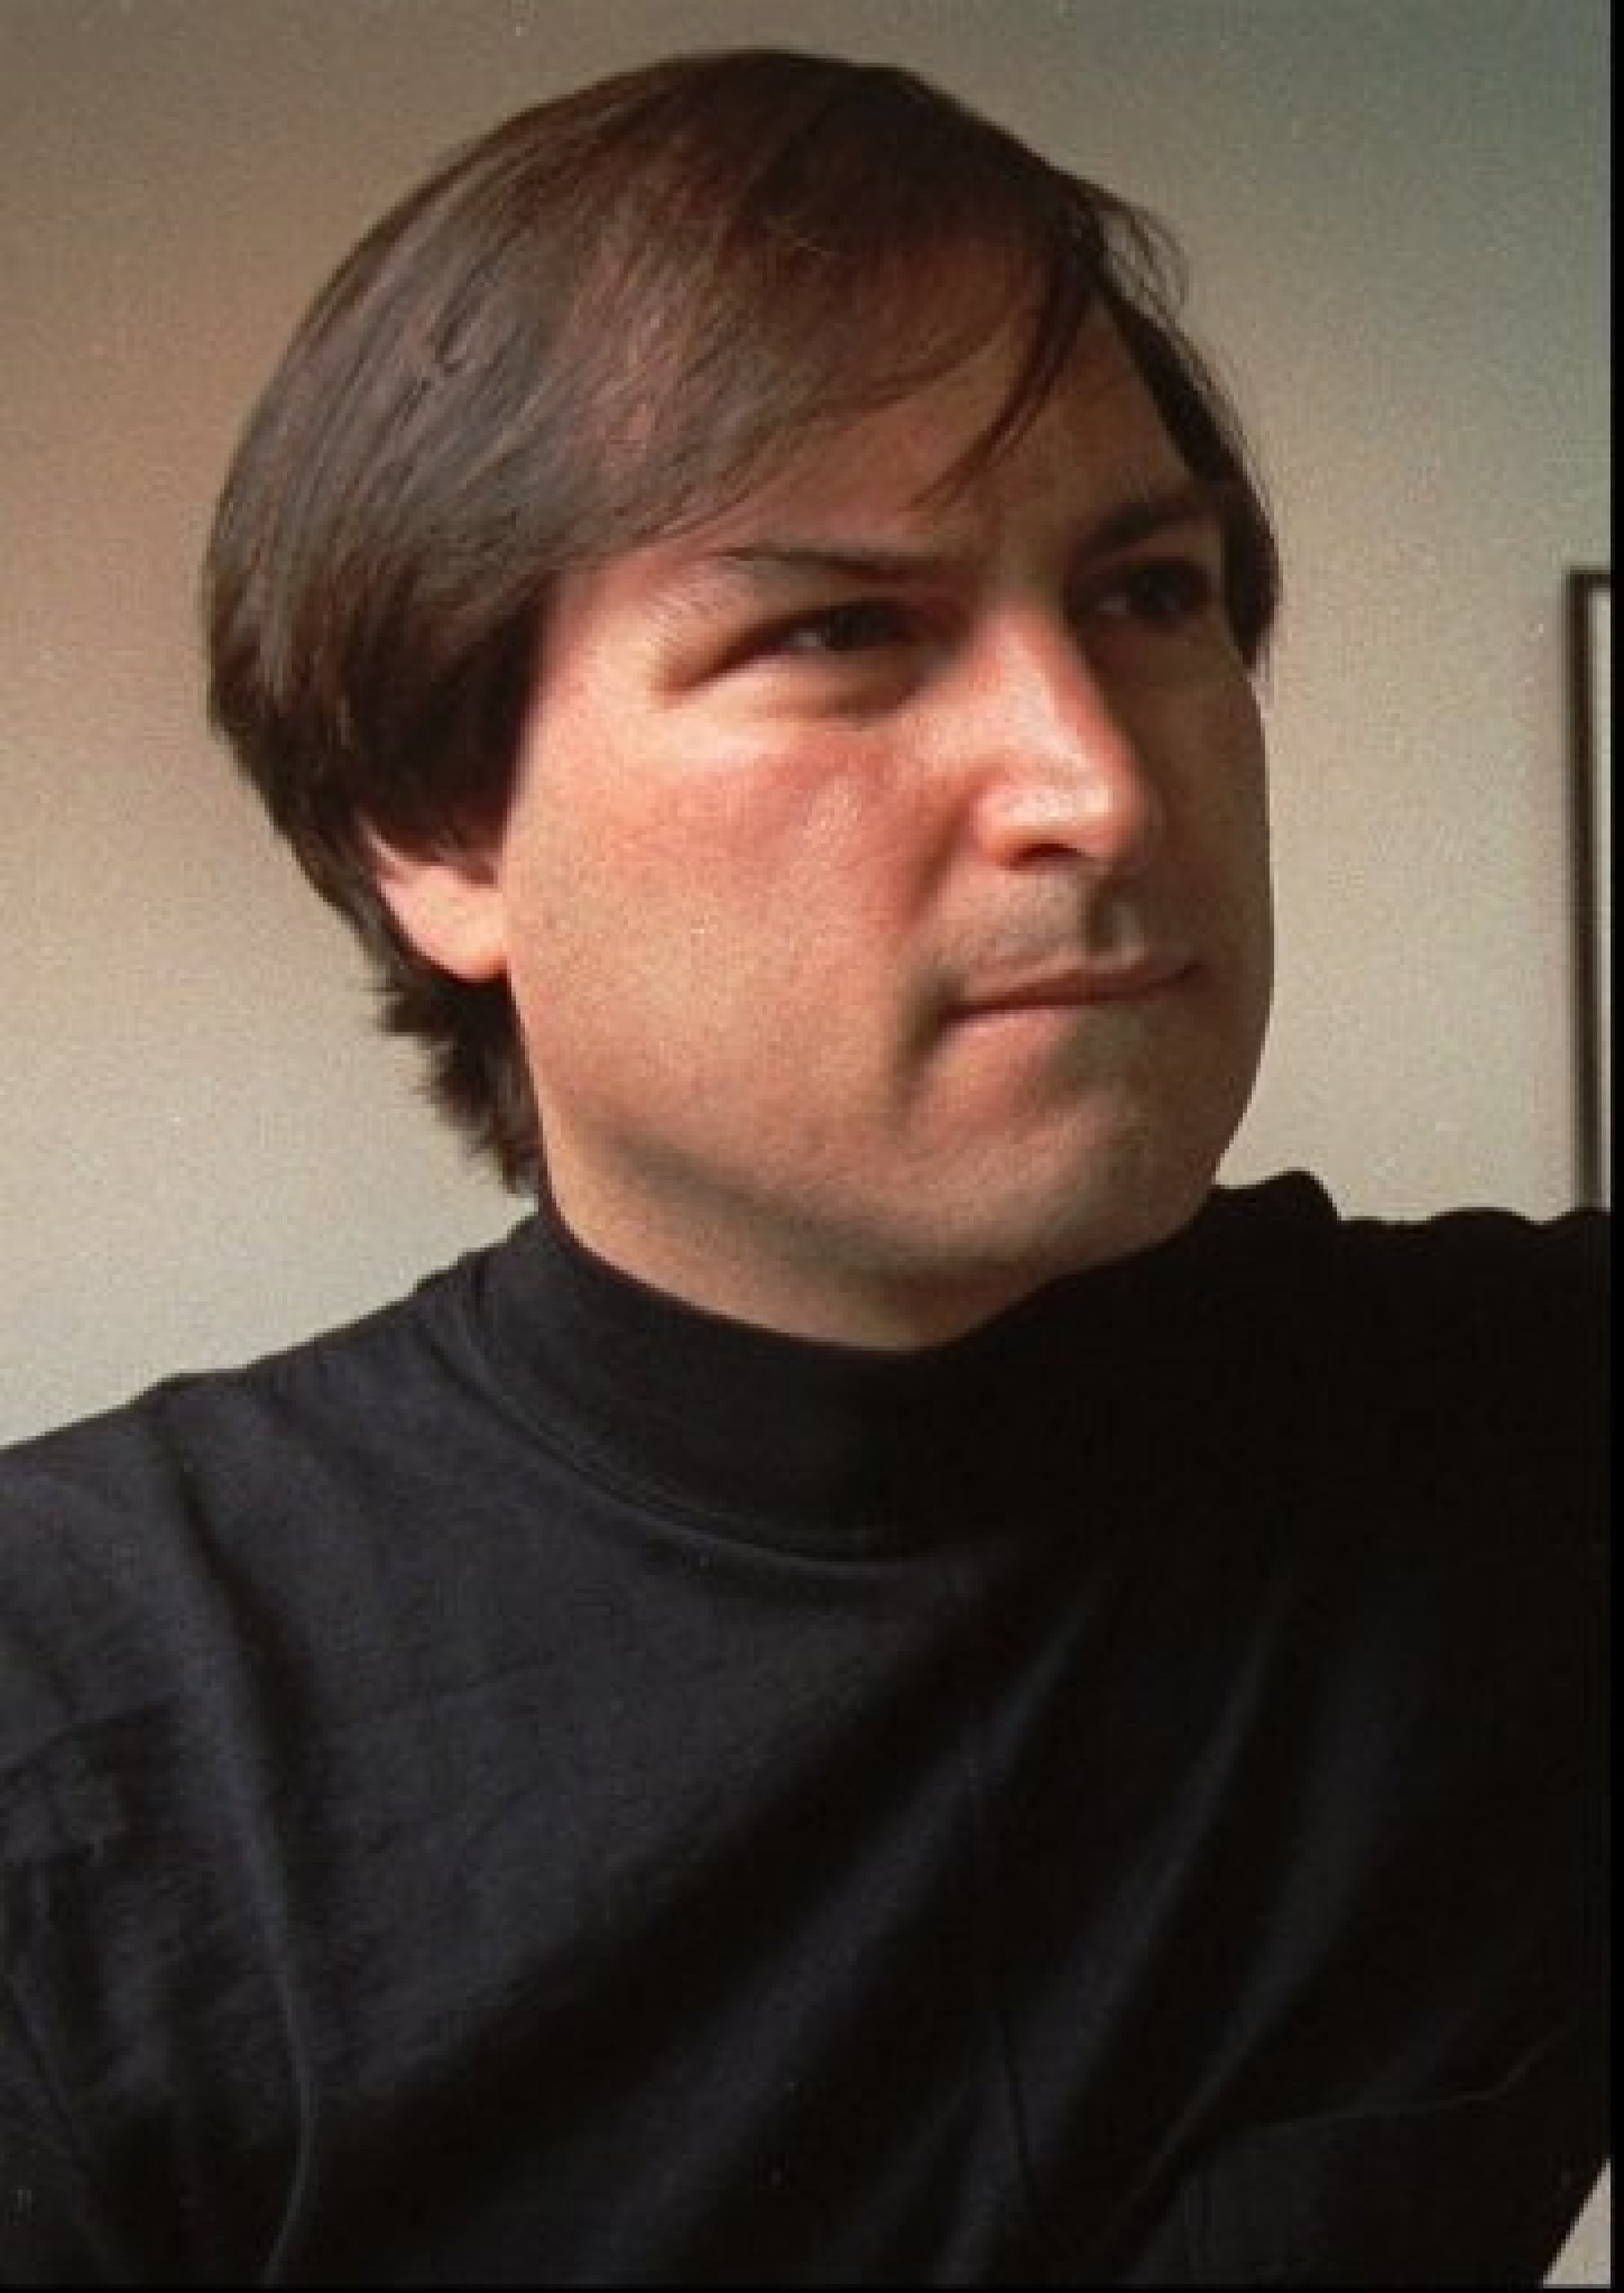 Steve Jobs Turns 57